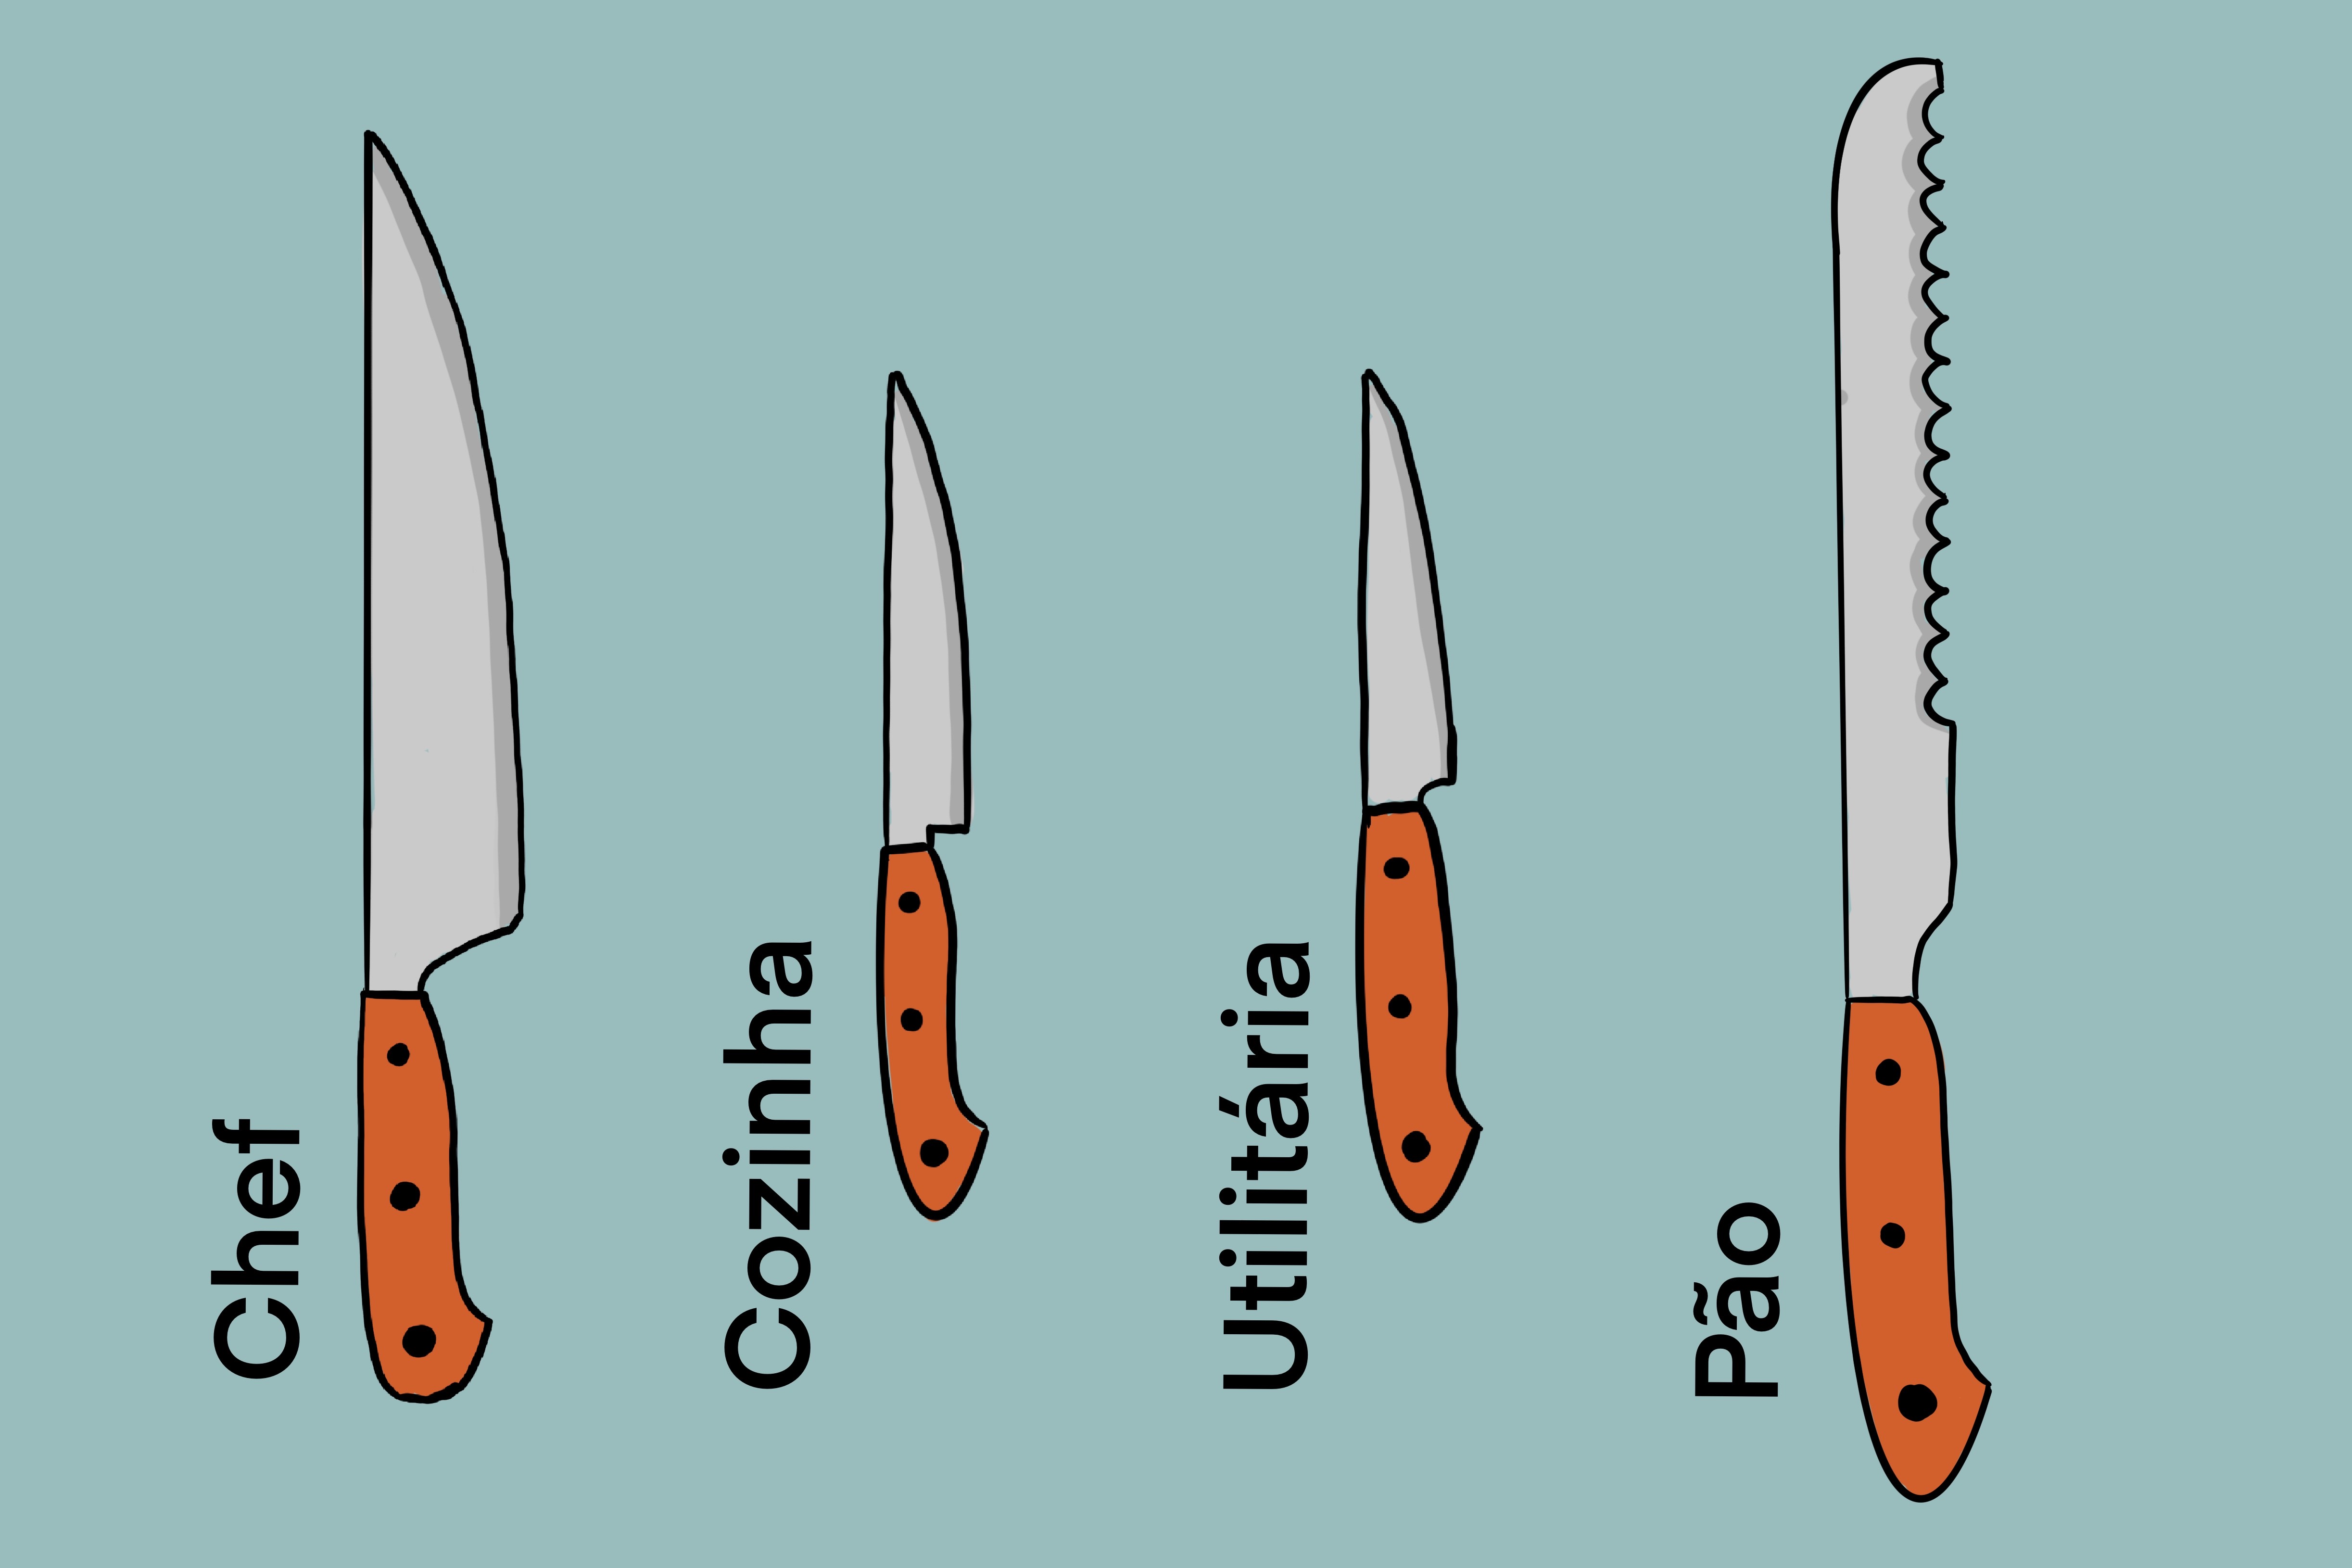 Como escolher facas de cozinha: guia definitivo 